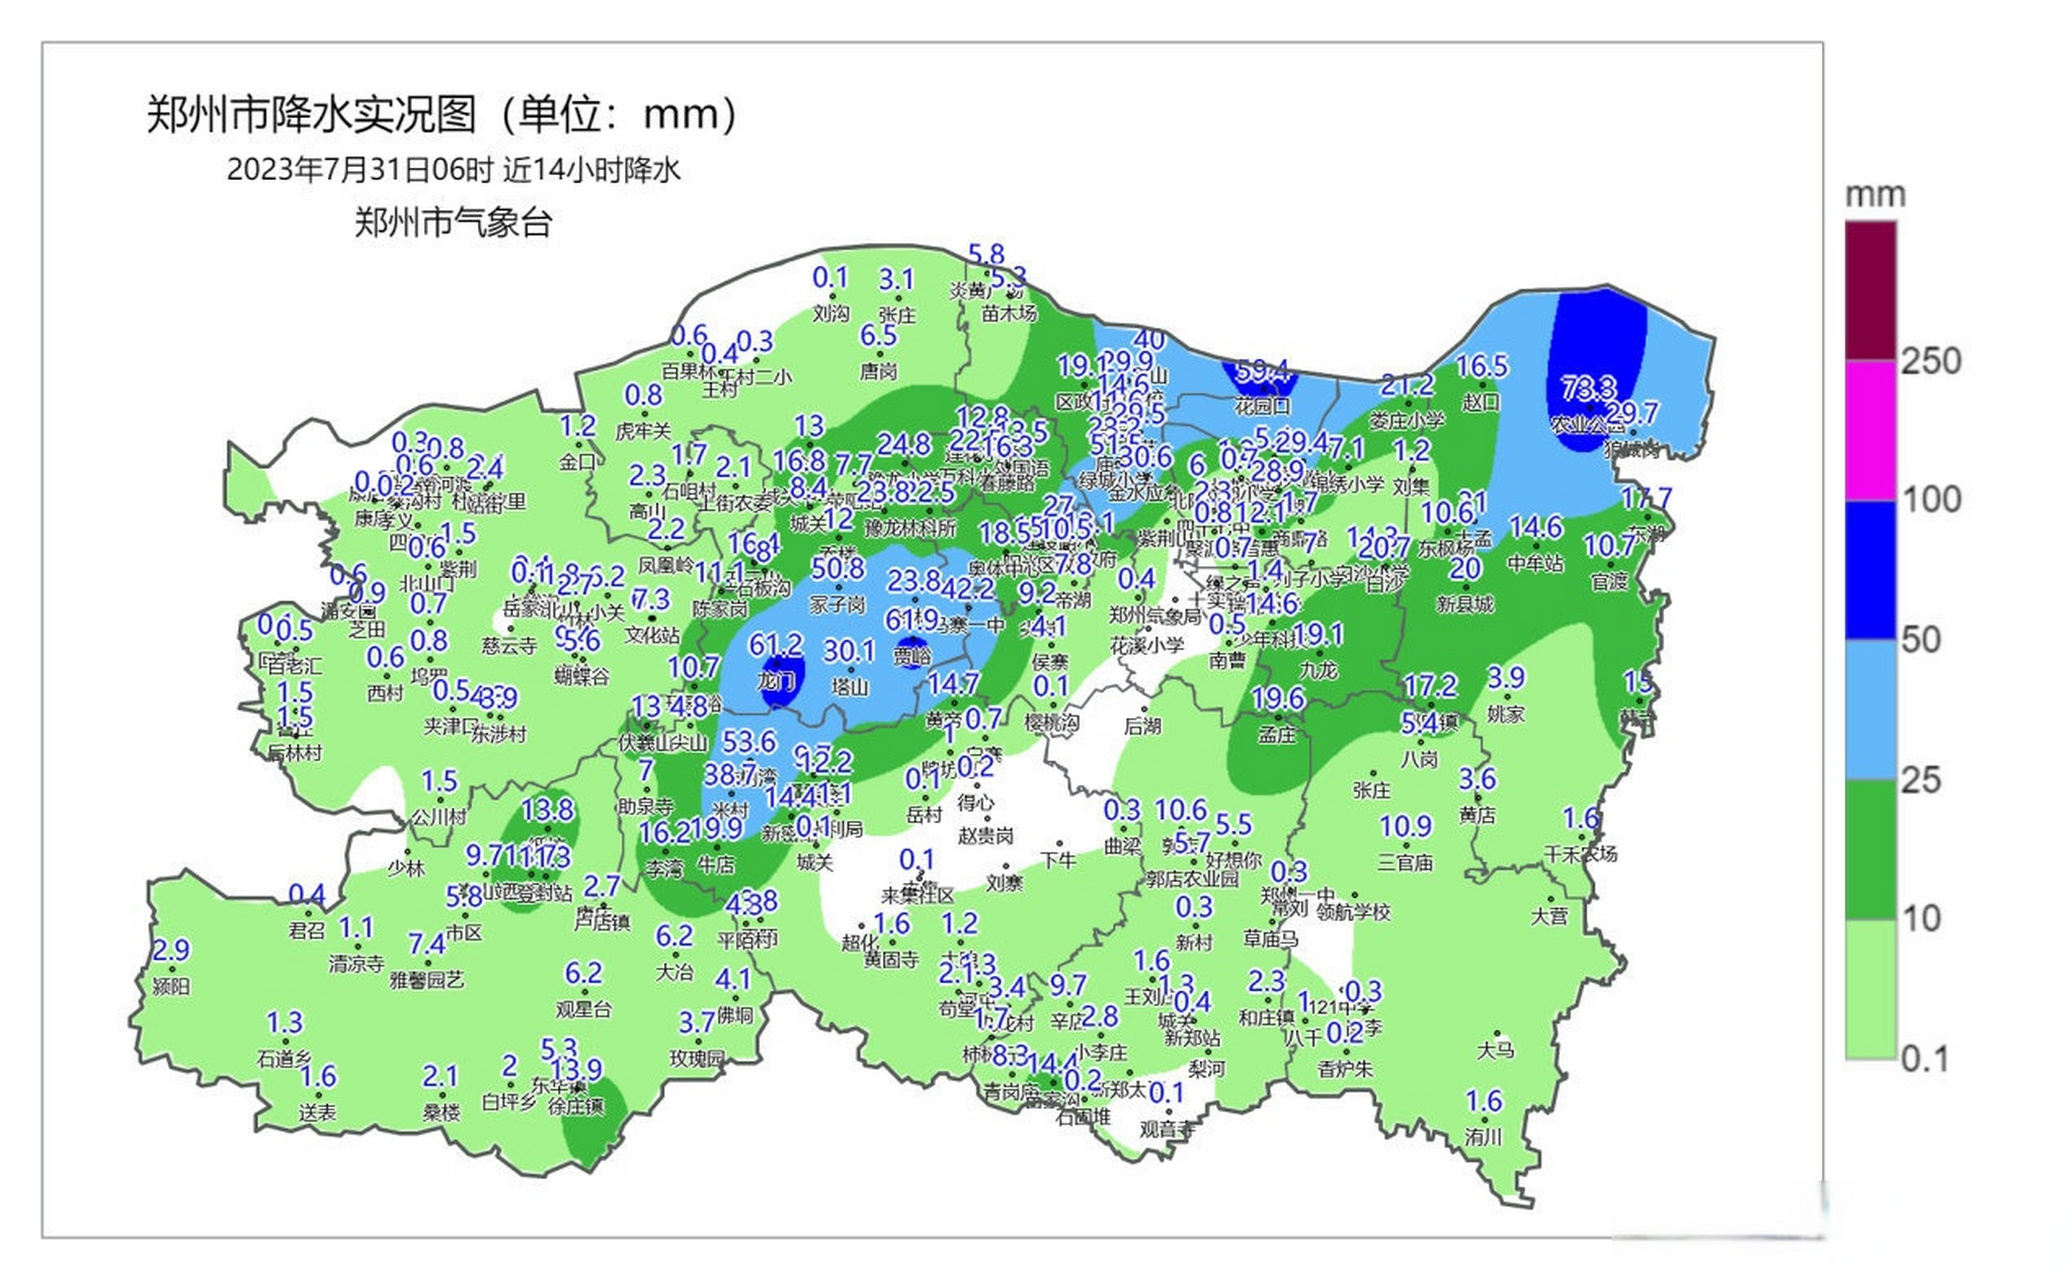 郑州历年降水量变化图图片